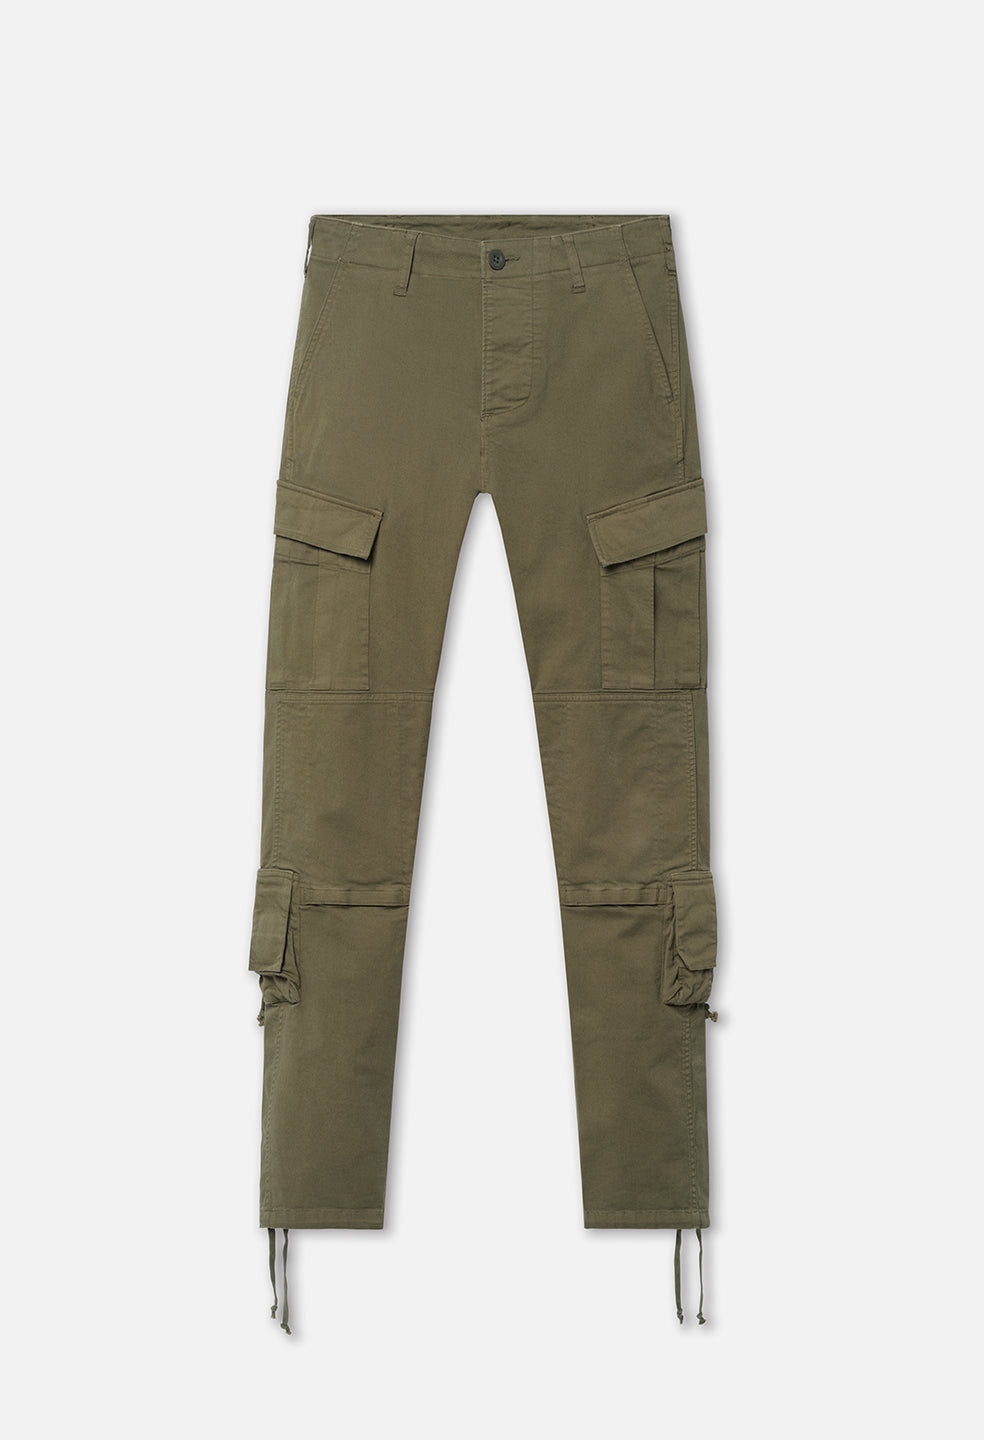 Men's Urban Cargo Pants Waterproof Ripstop Tactical Pants | Falour